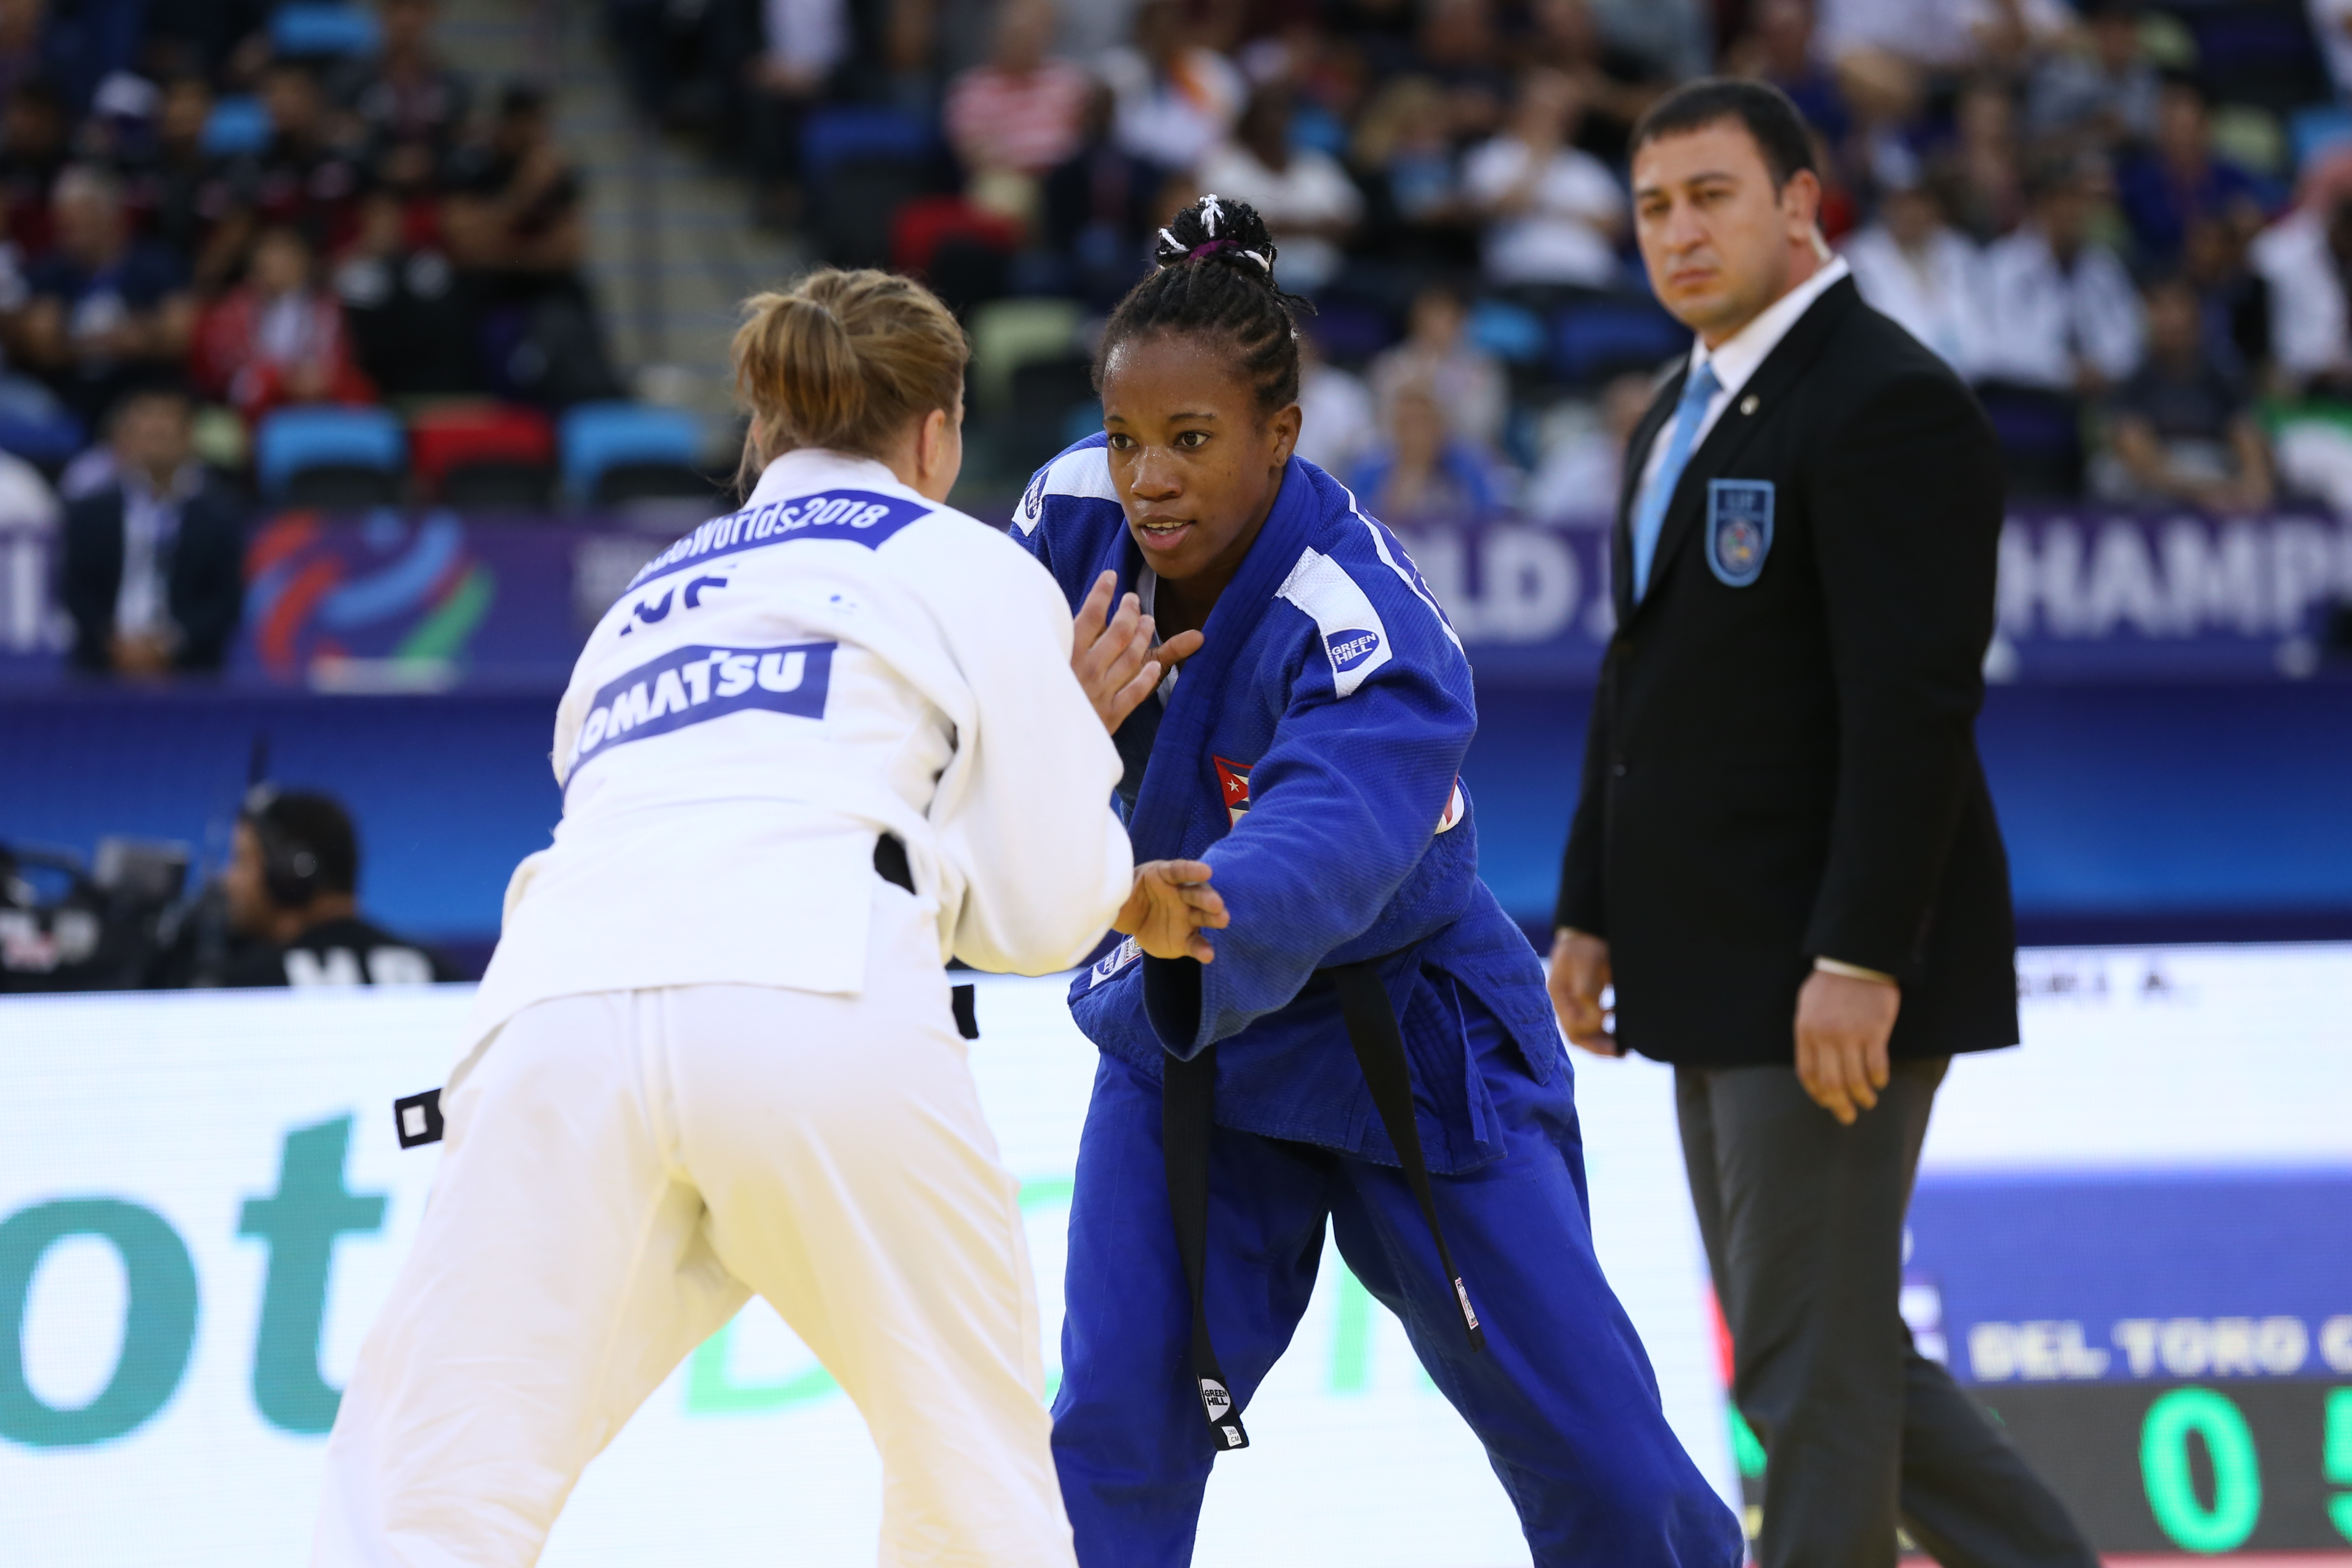 Maylin del Toro, lo mejor por Cuba hasta hoy en el mundial de judo. Foto: Enmanuele Di-